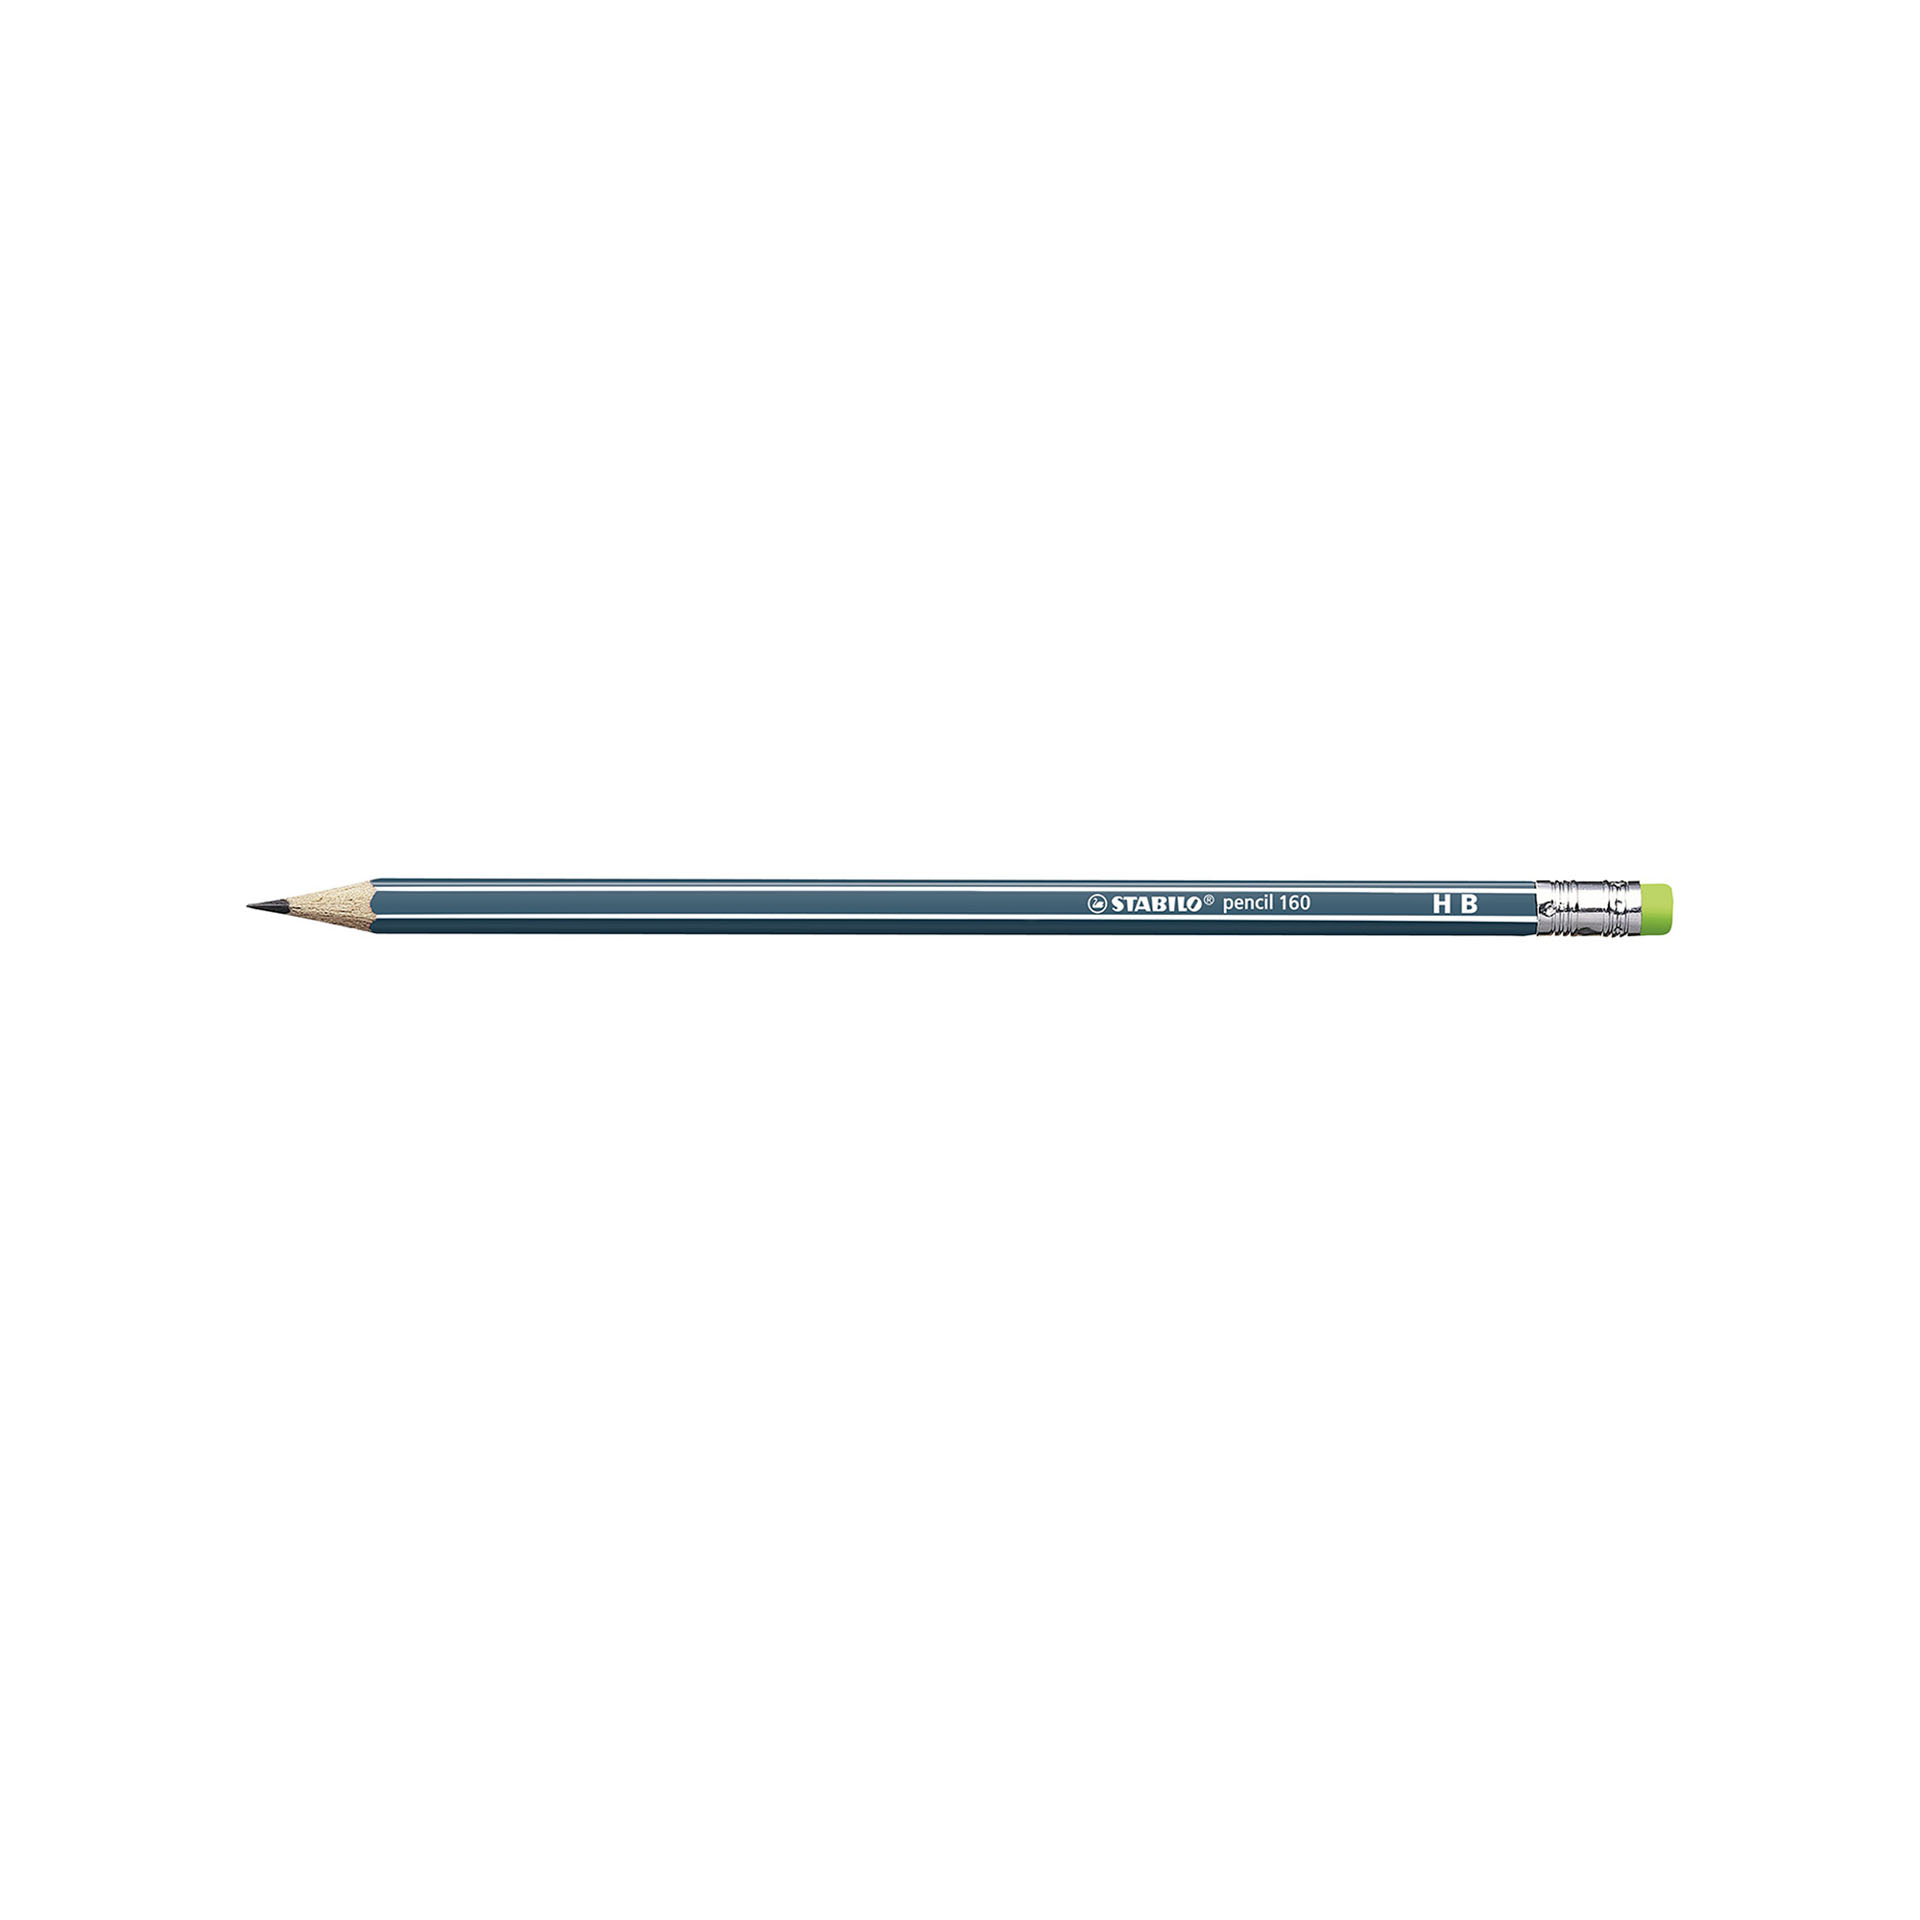 Matita in grafite - STABILO Pencil 160 - con gommino -, , large